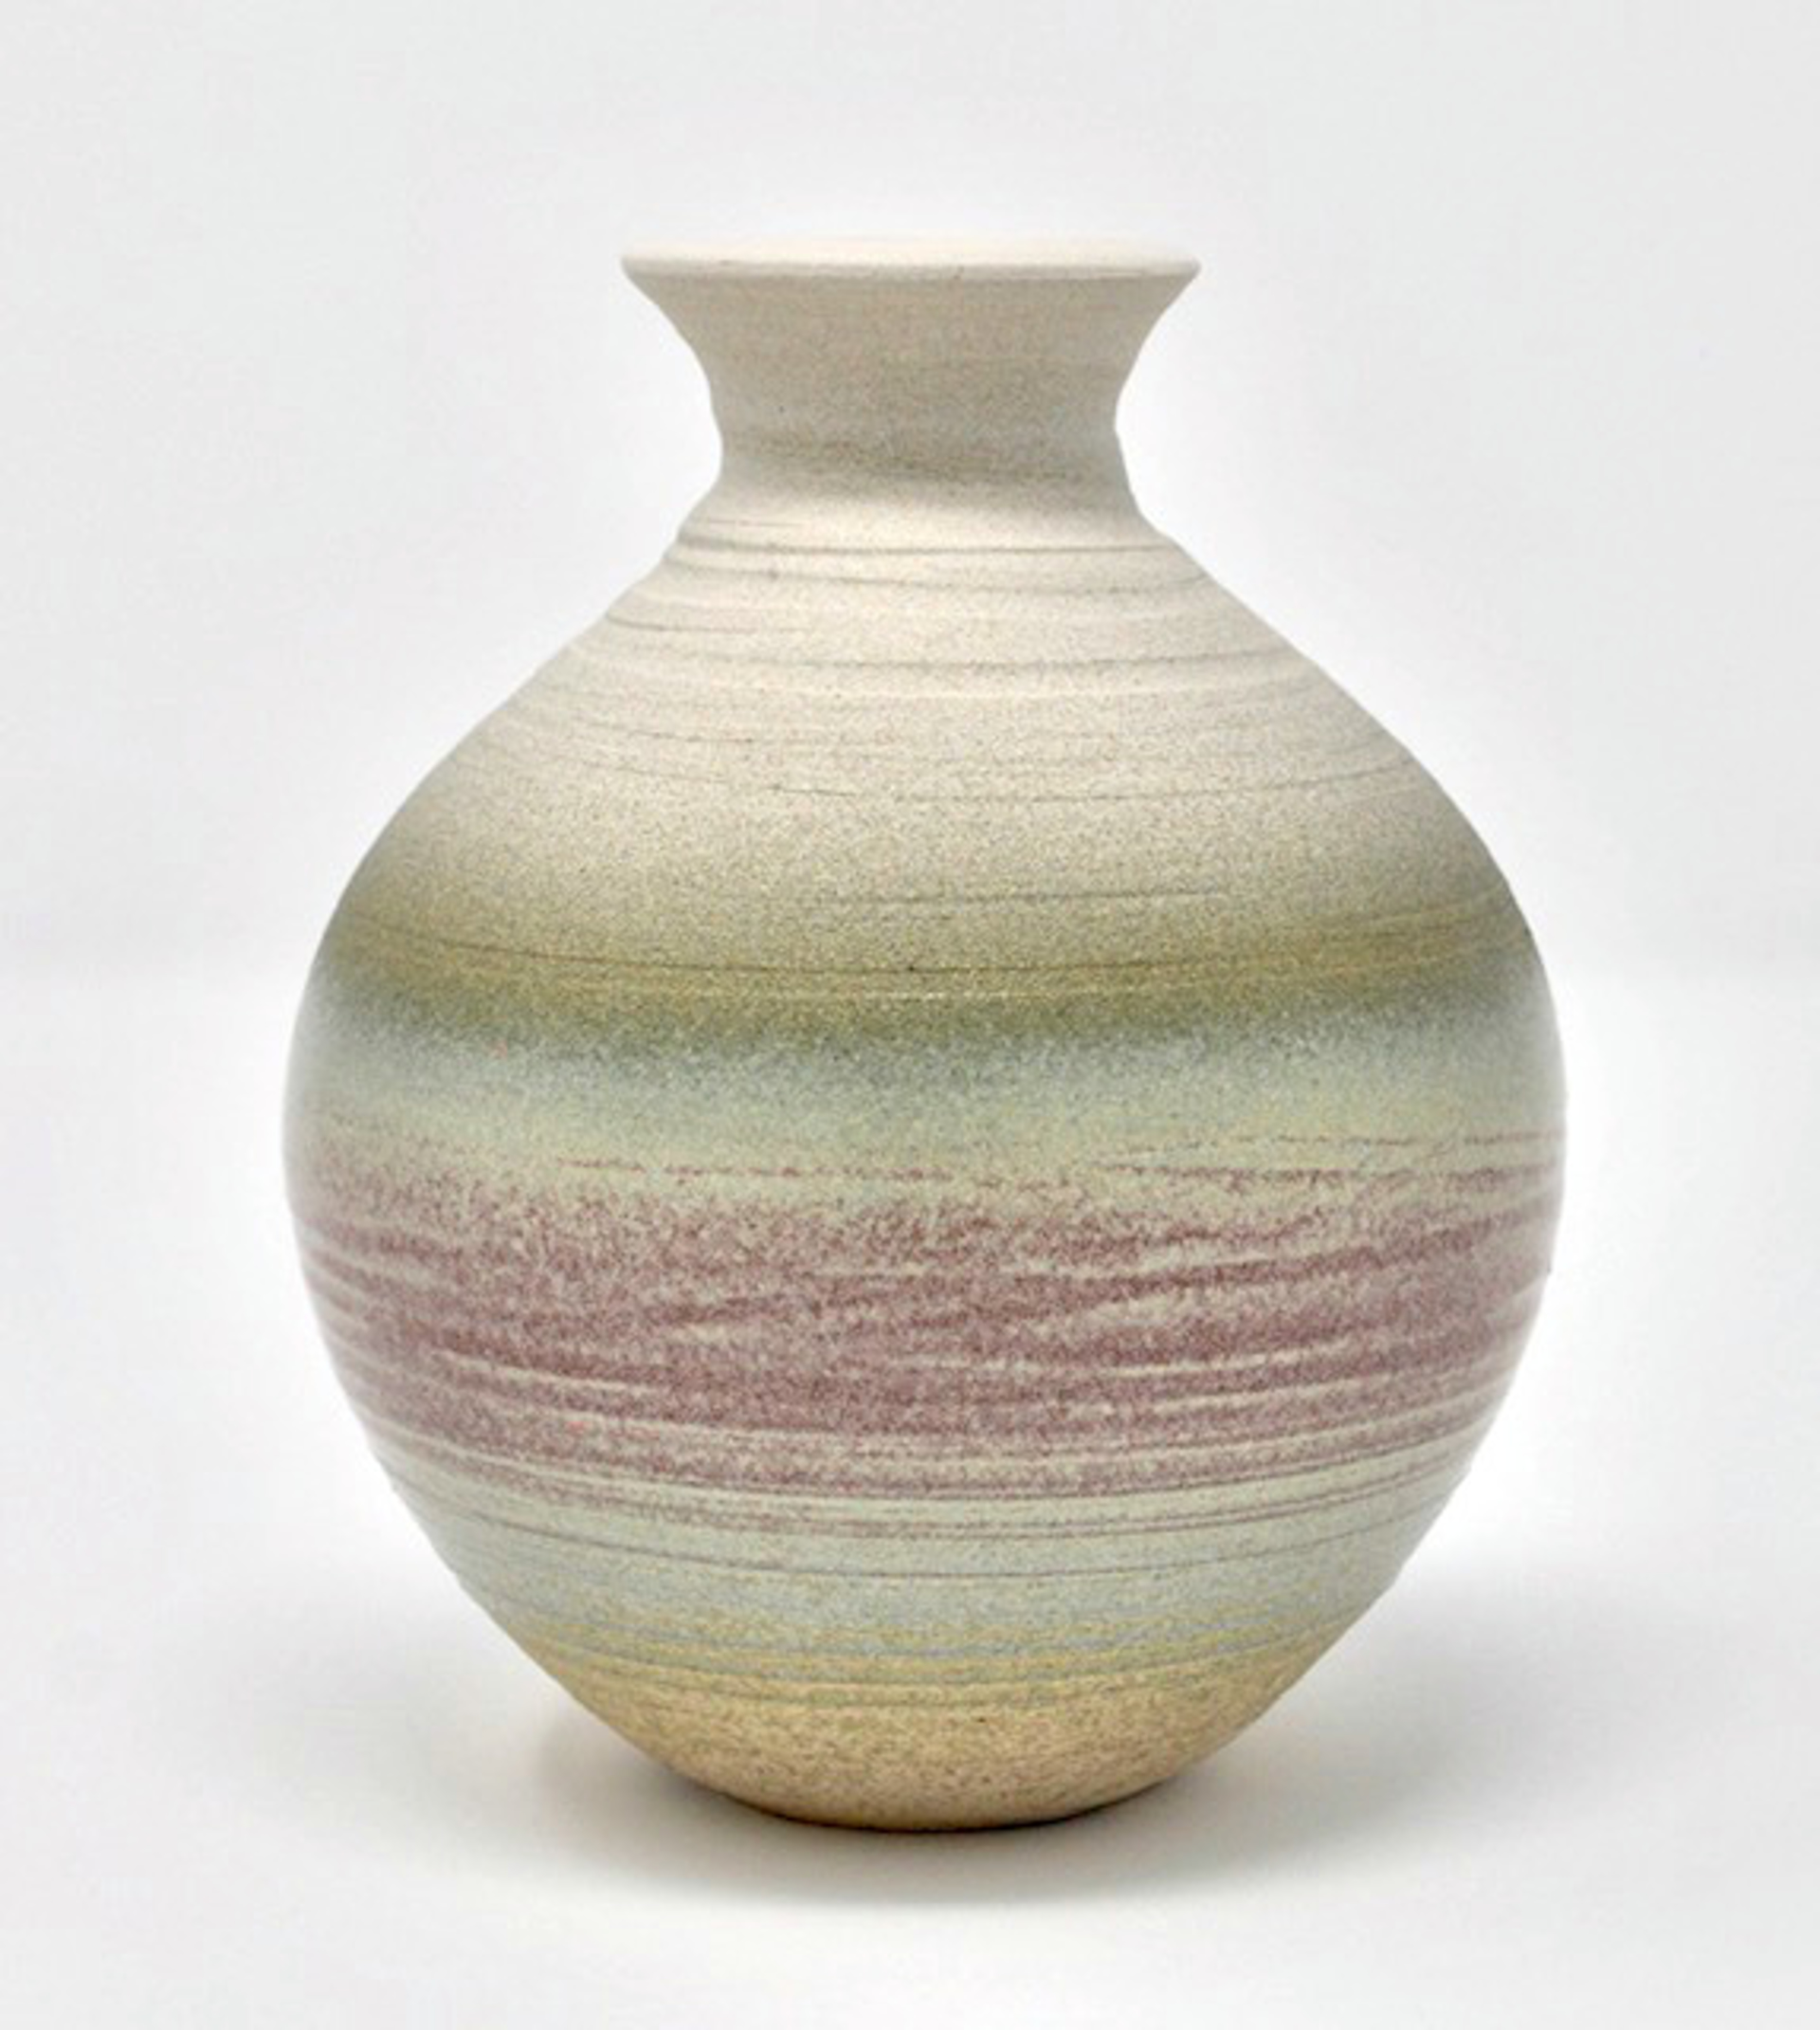 Vase 6 by Heather Bradley